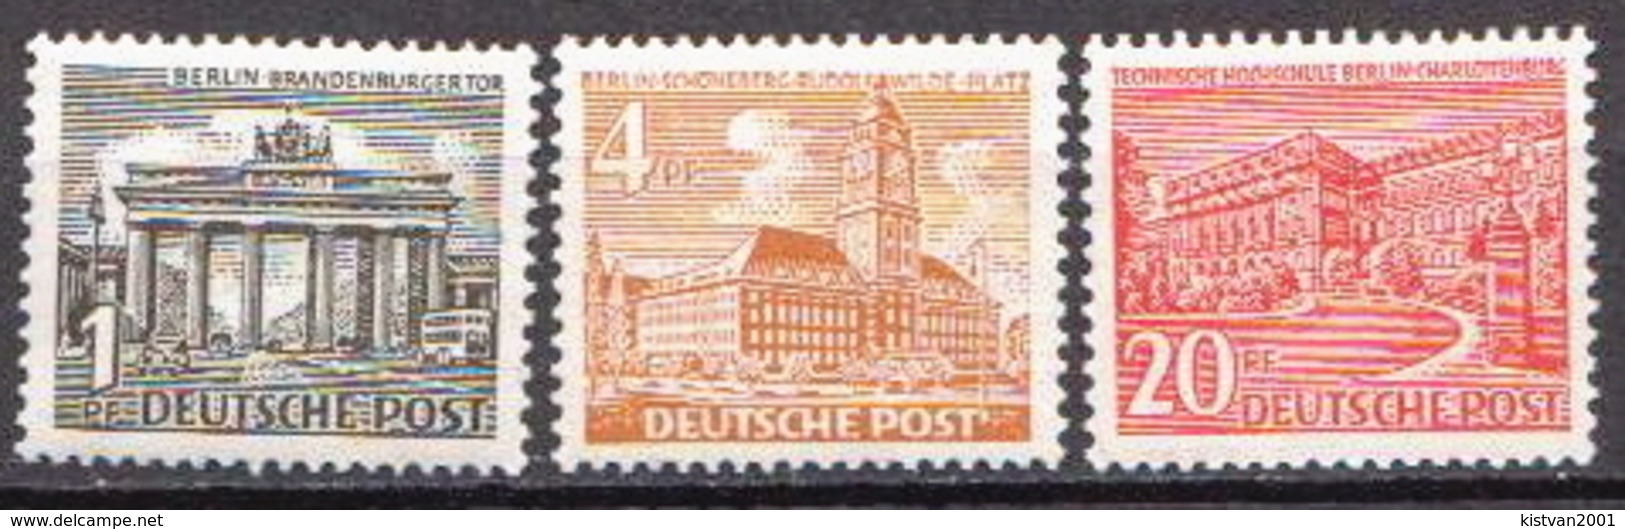 Germany / Berlin MNH Stamps - Ongebruikt